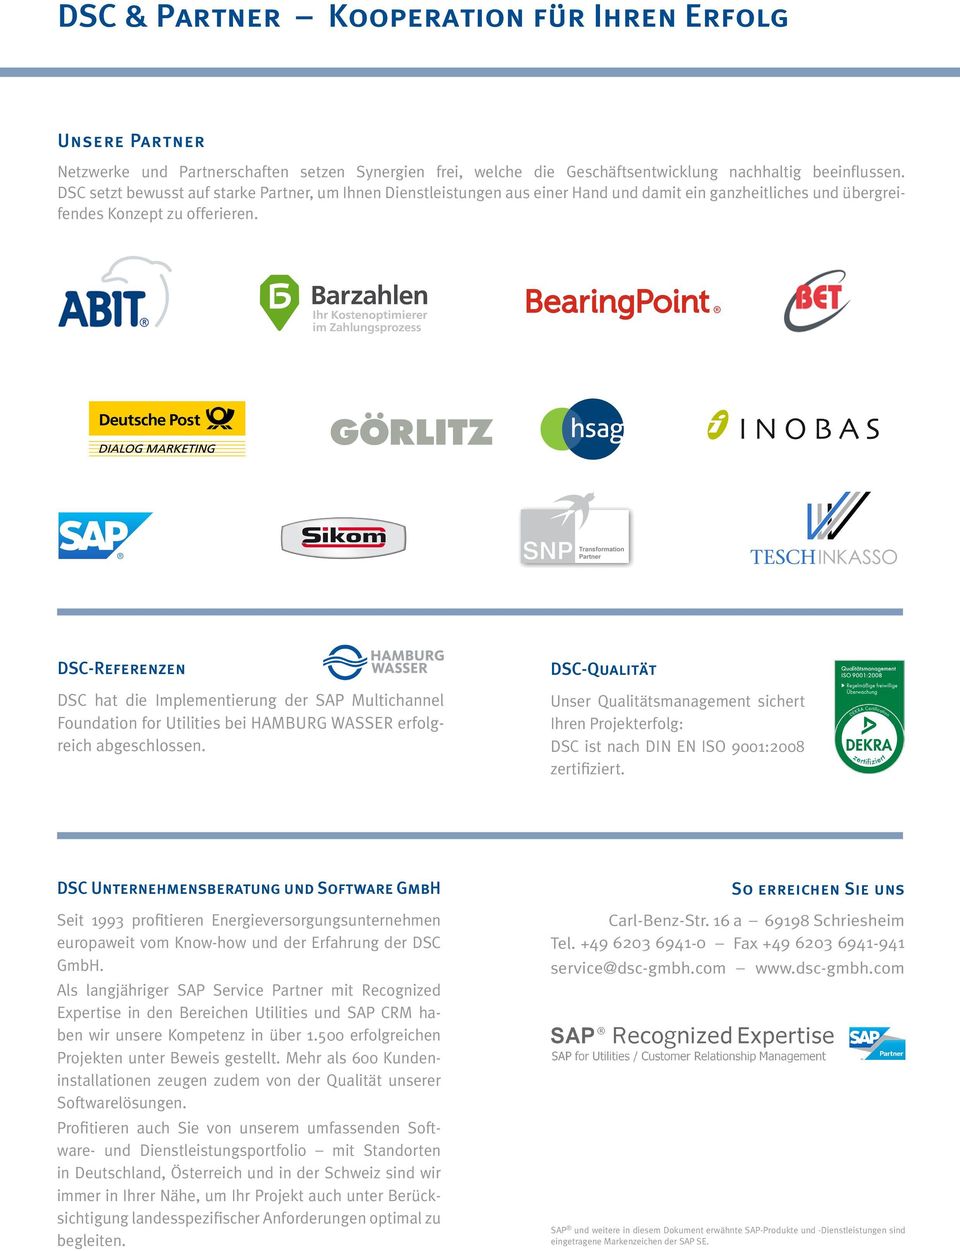 DSC-Referenzen DSC hat die Implementierung der SAP Multichannel Foundation for Utilities bei HAMBURG WASSER erfolgreich abgeschlossen.